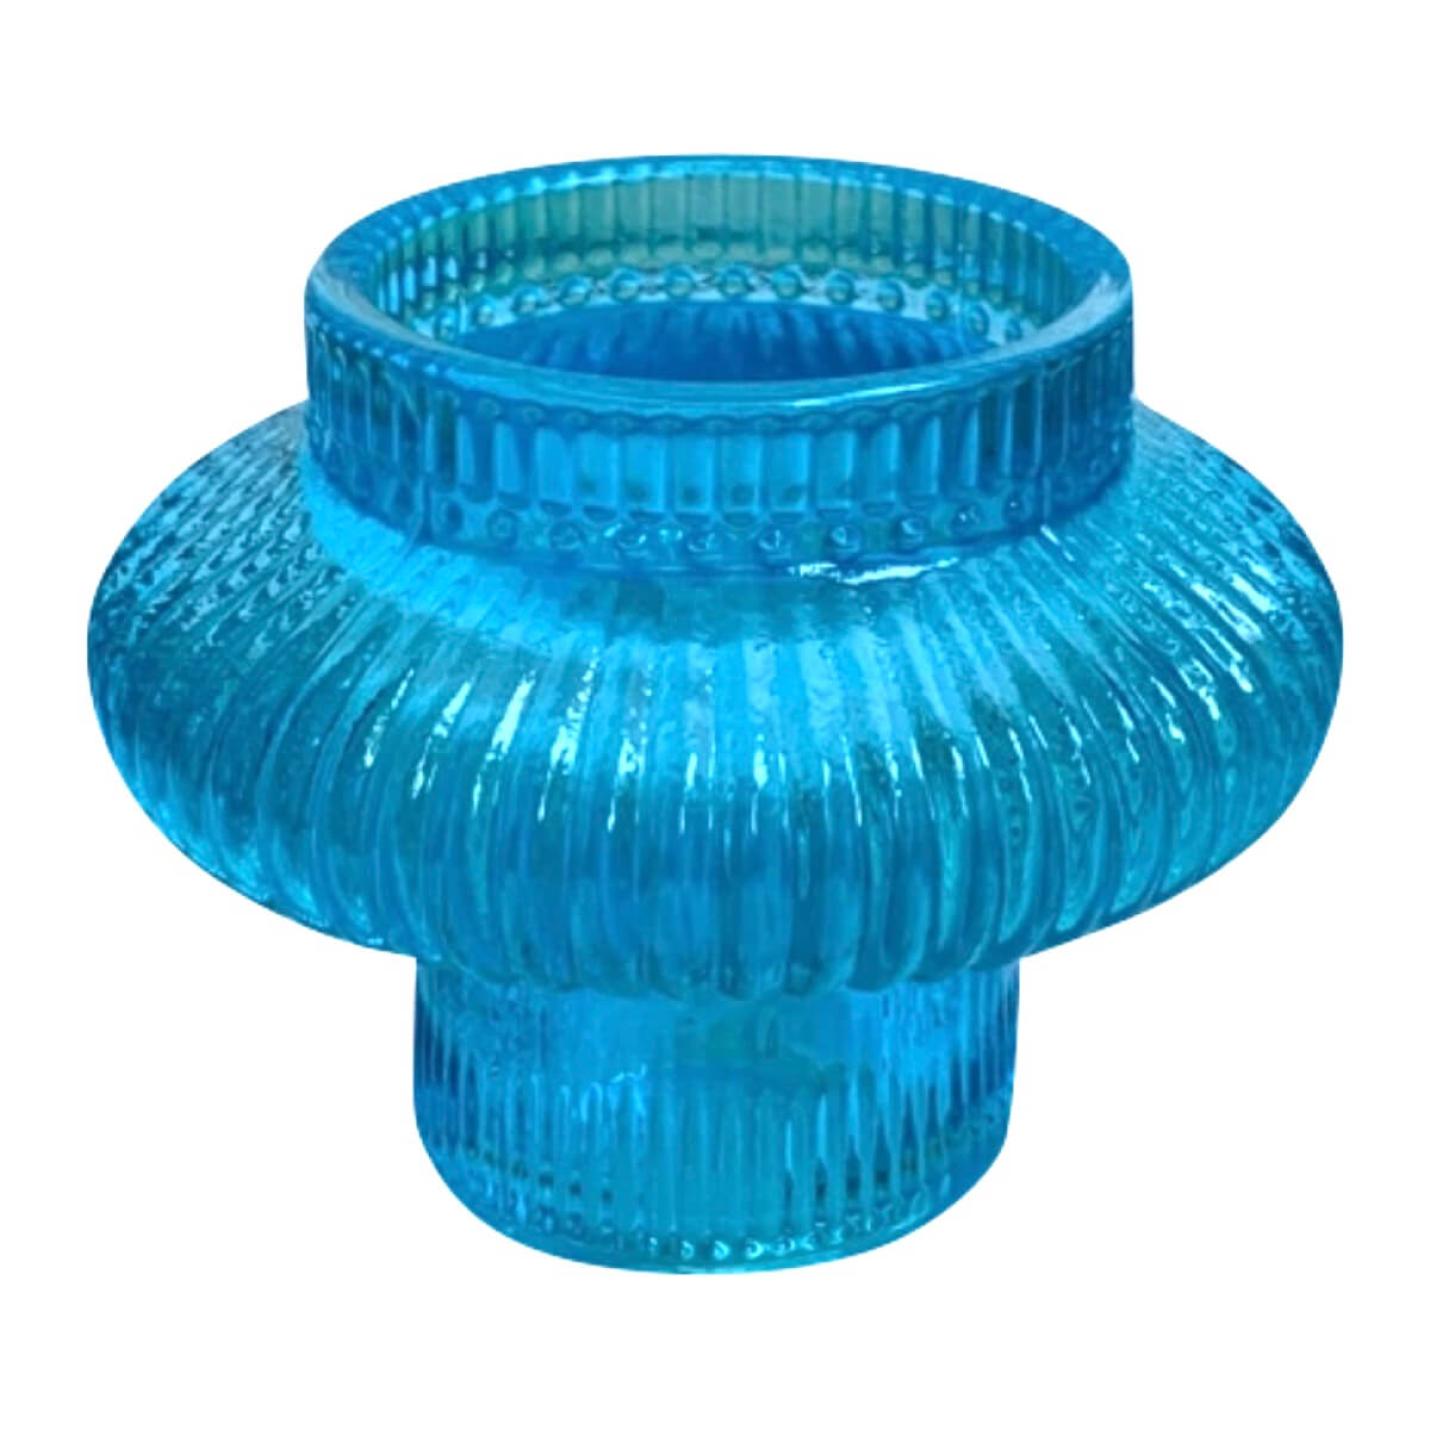 Glazen kandelaar / waxine houder in aqua blauw; Afbeelding: 2